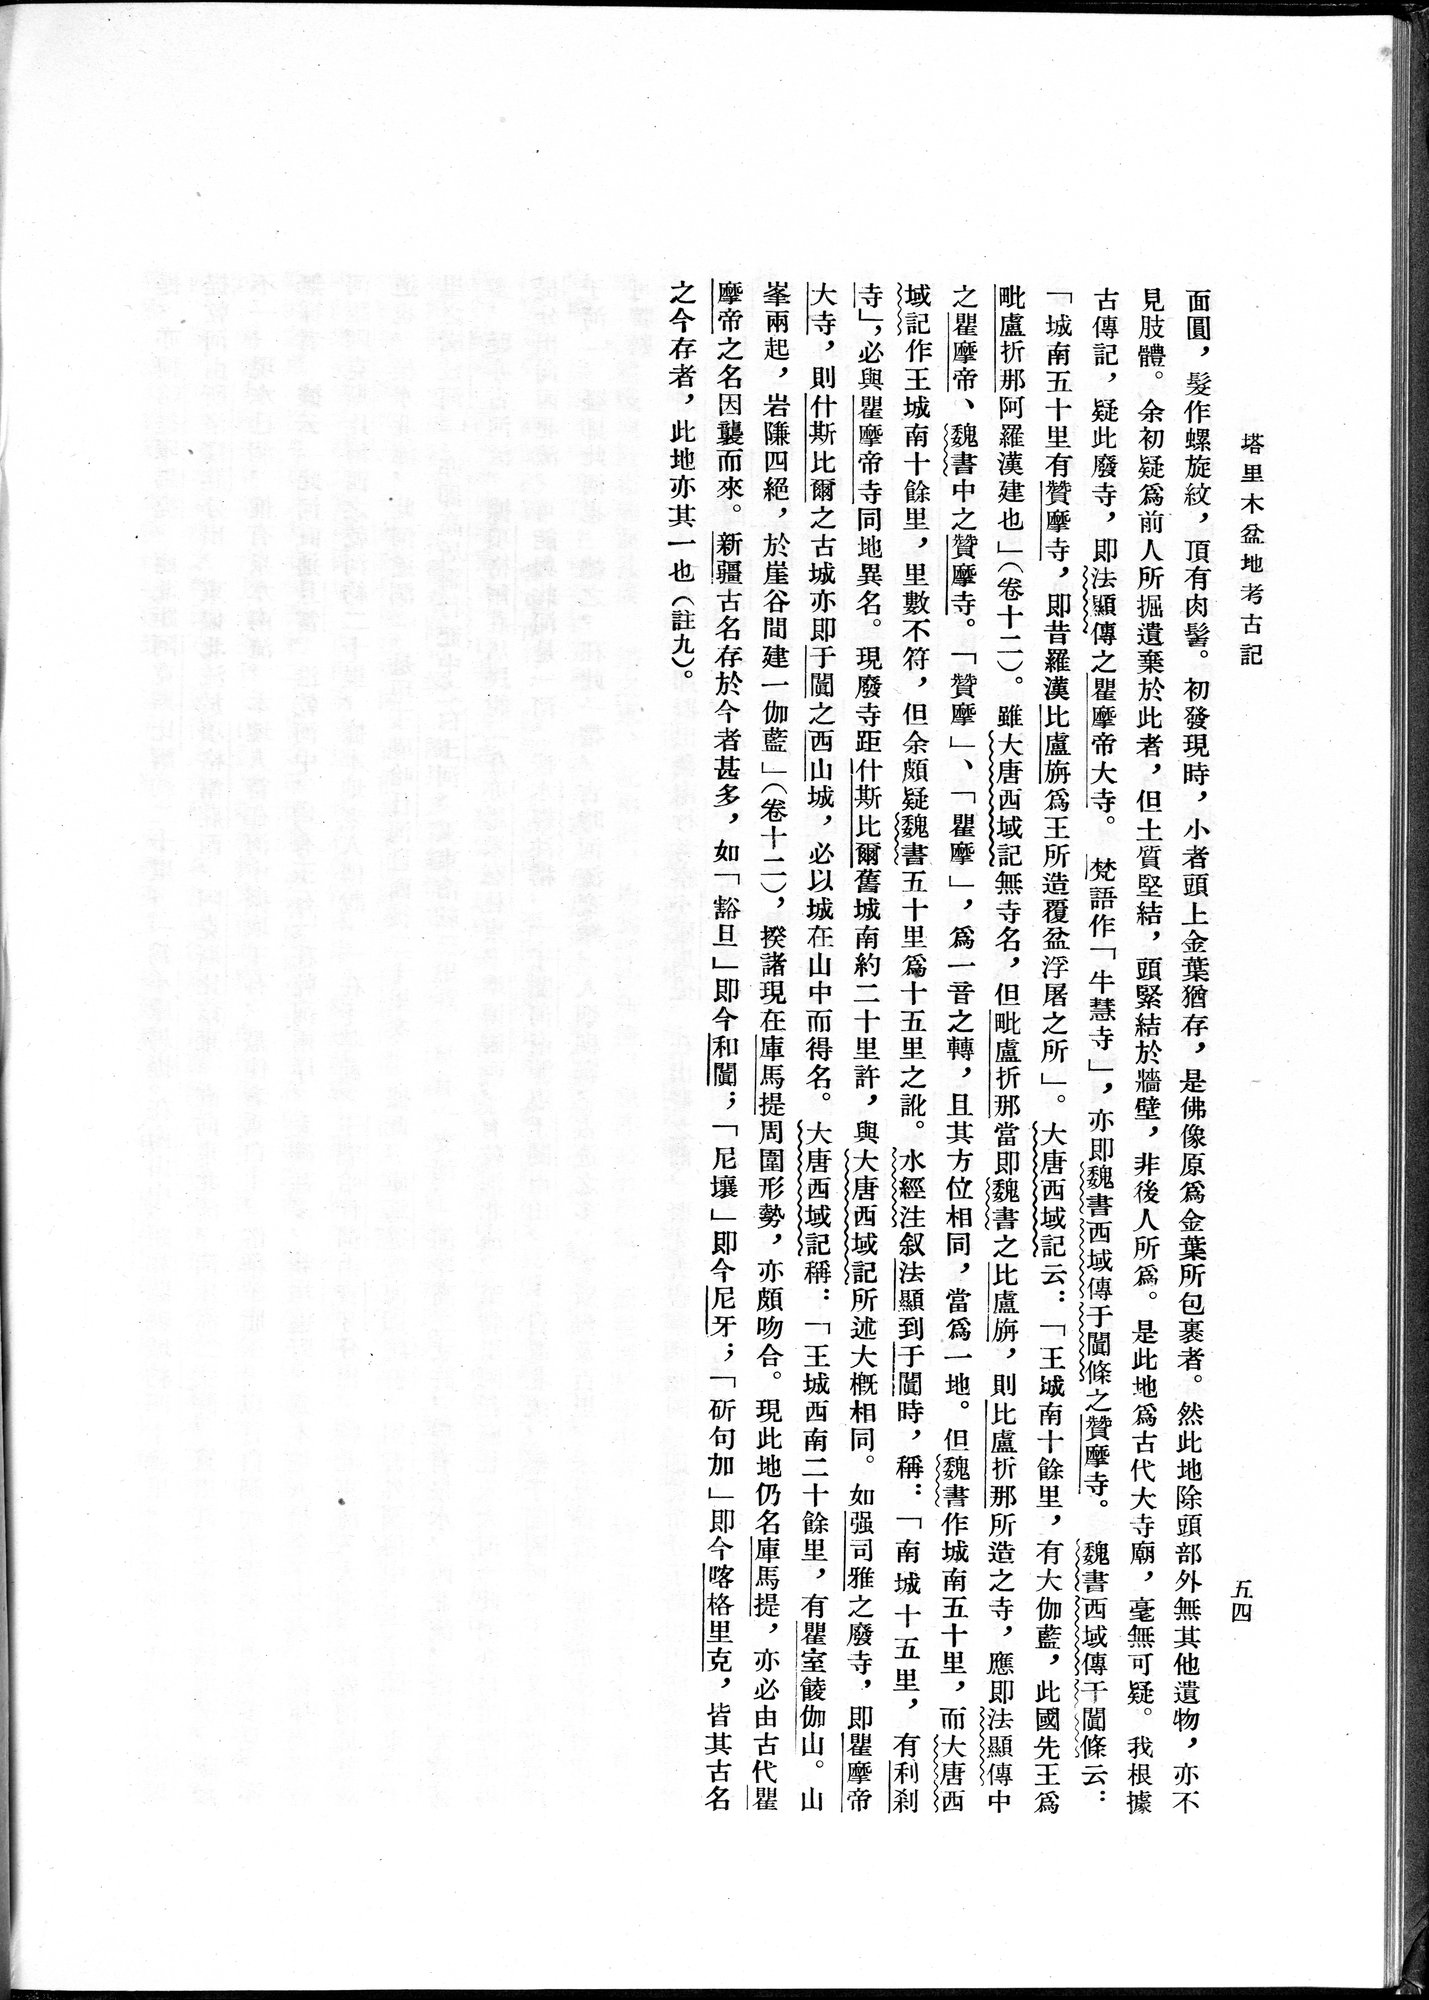 塔里木盆地考古記 : vol.1 / 78 ページ（白黒高解像度画像）